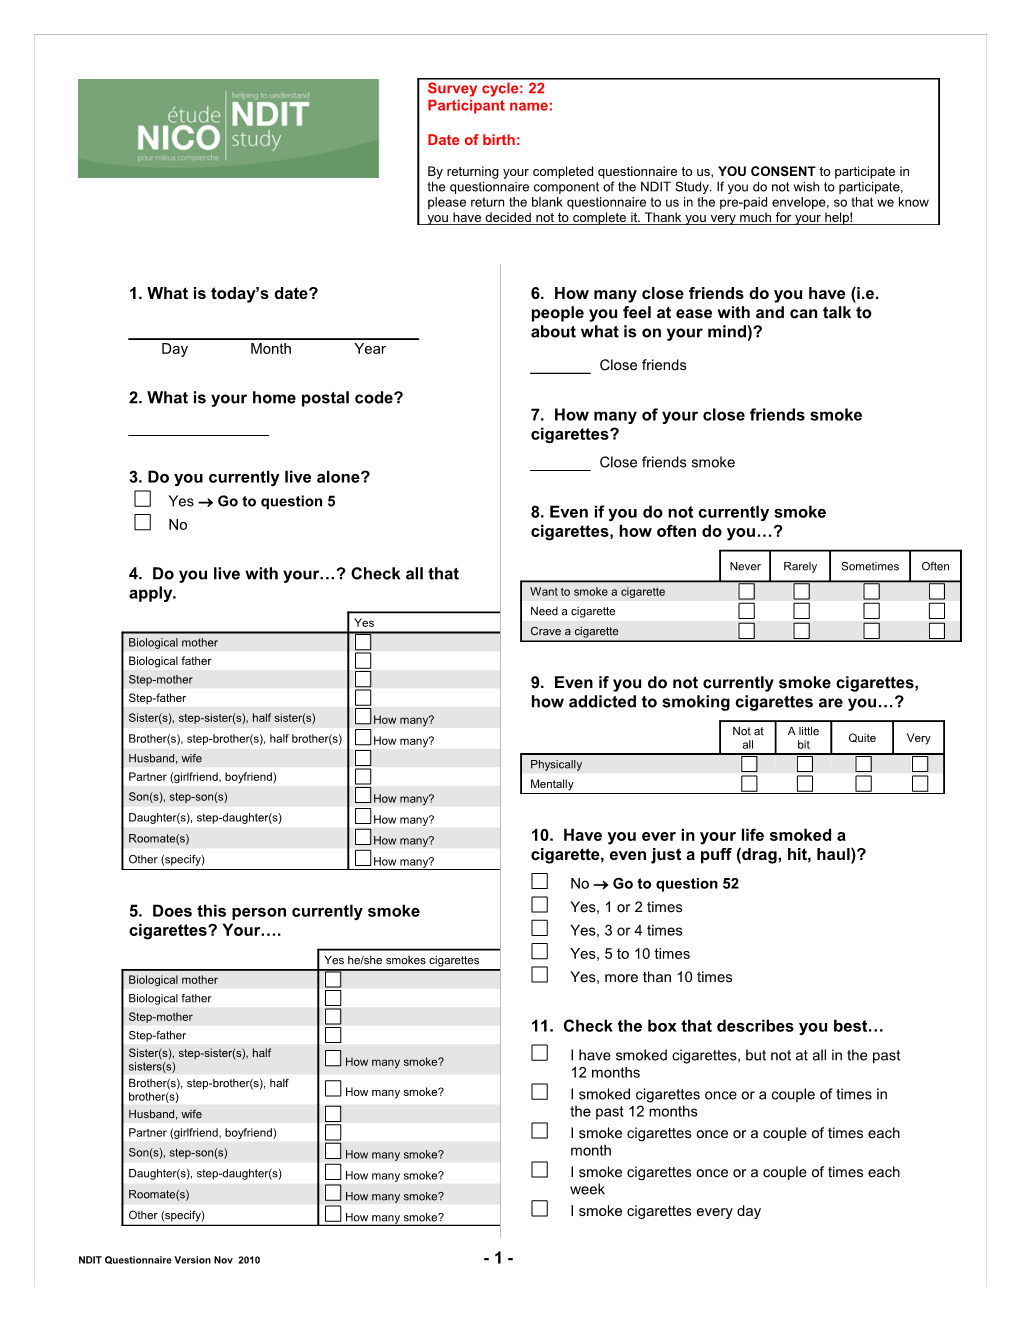 NDIT Questionnaire Version Nov 2010- 1